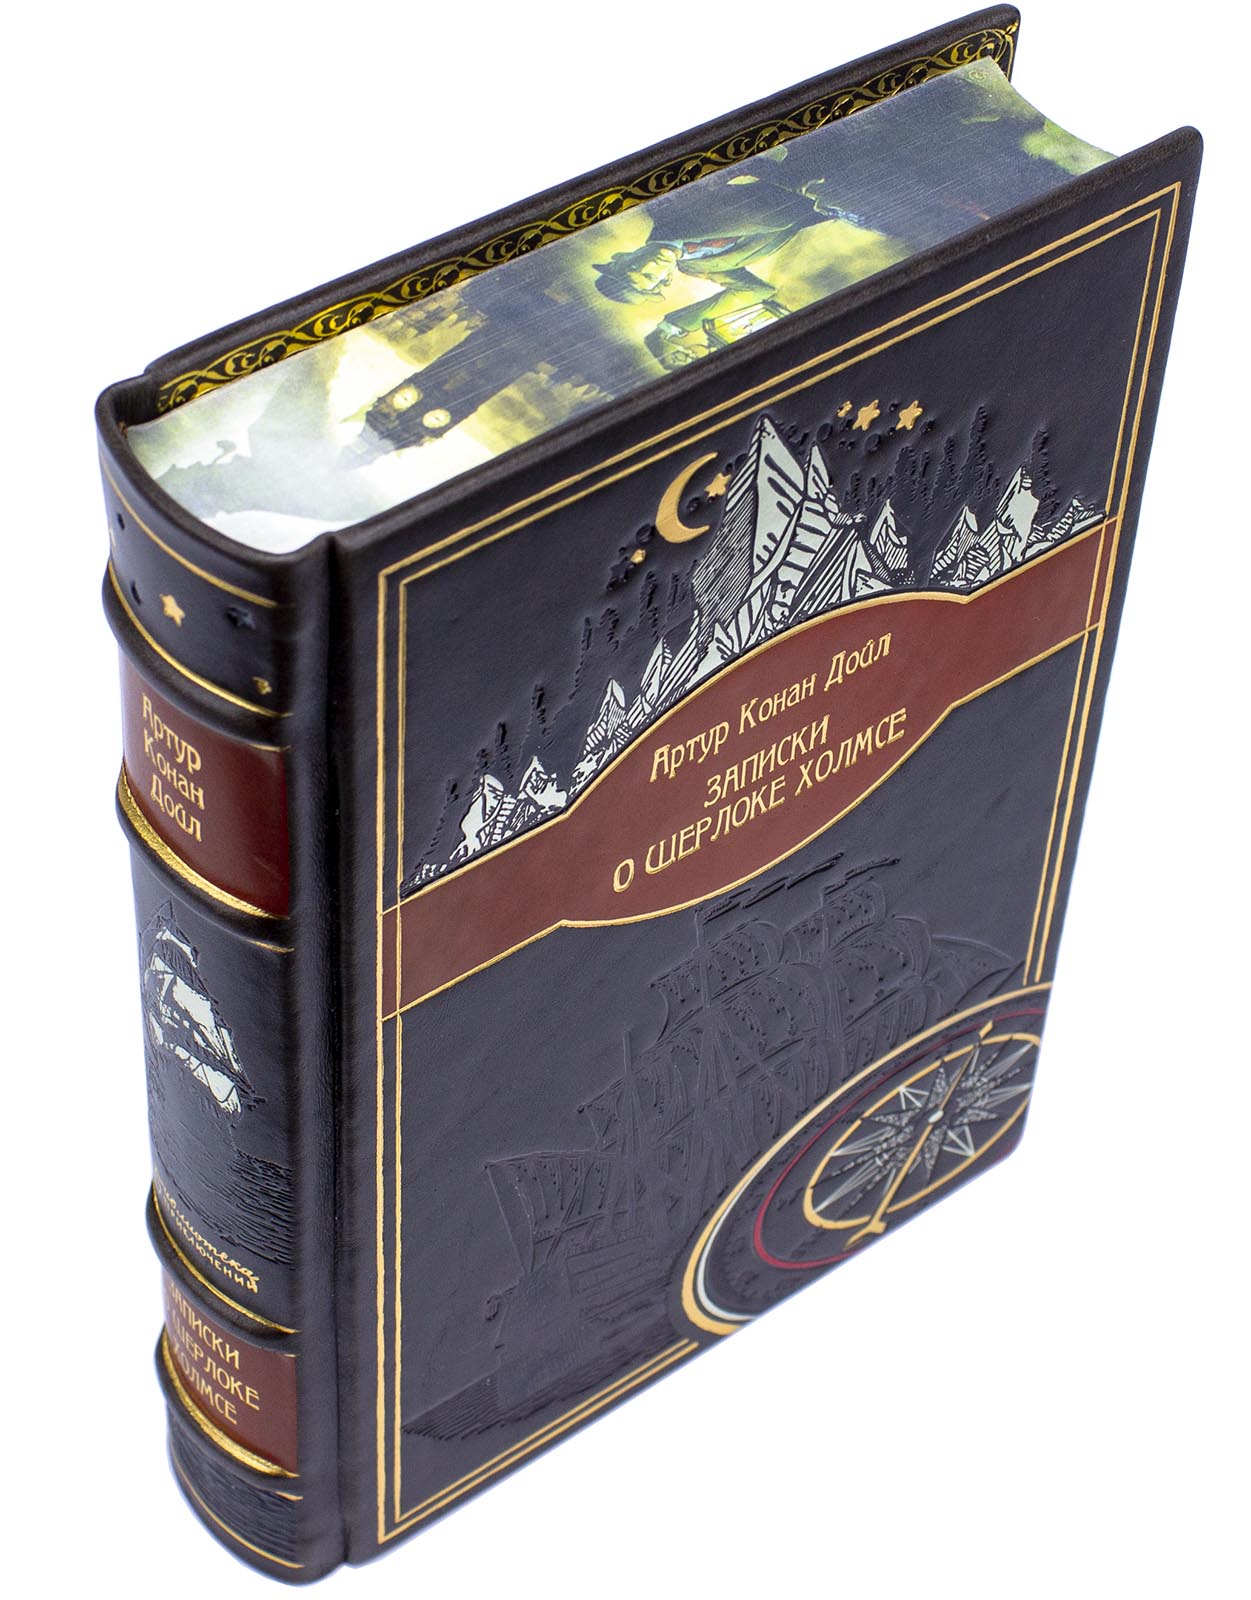 Артур Конан Дойл «Записки о Шерлоке Холмсе» подарочное издание в кожаном переплете